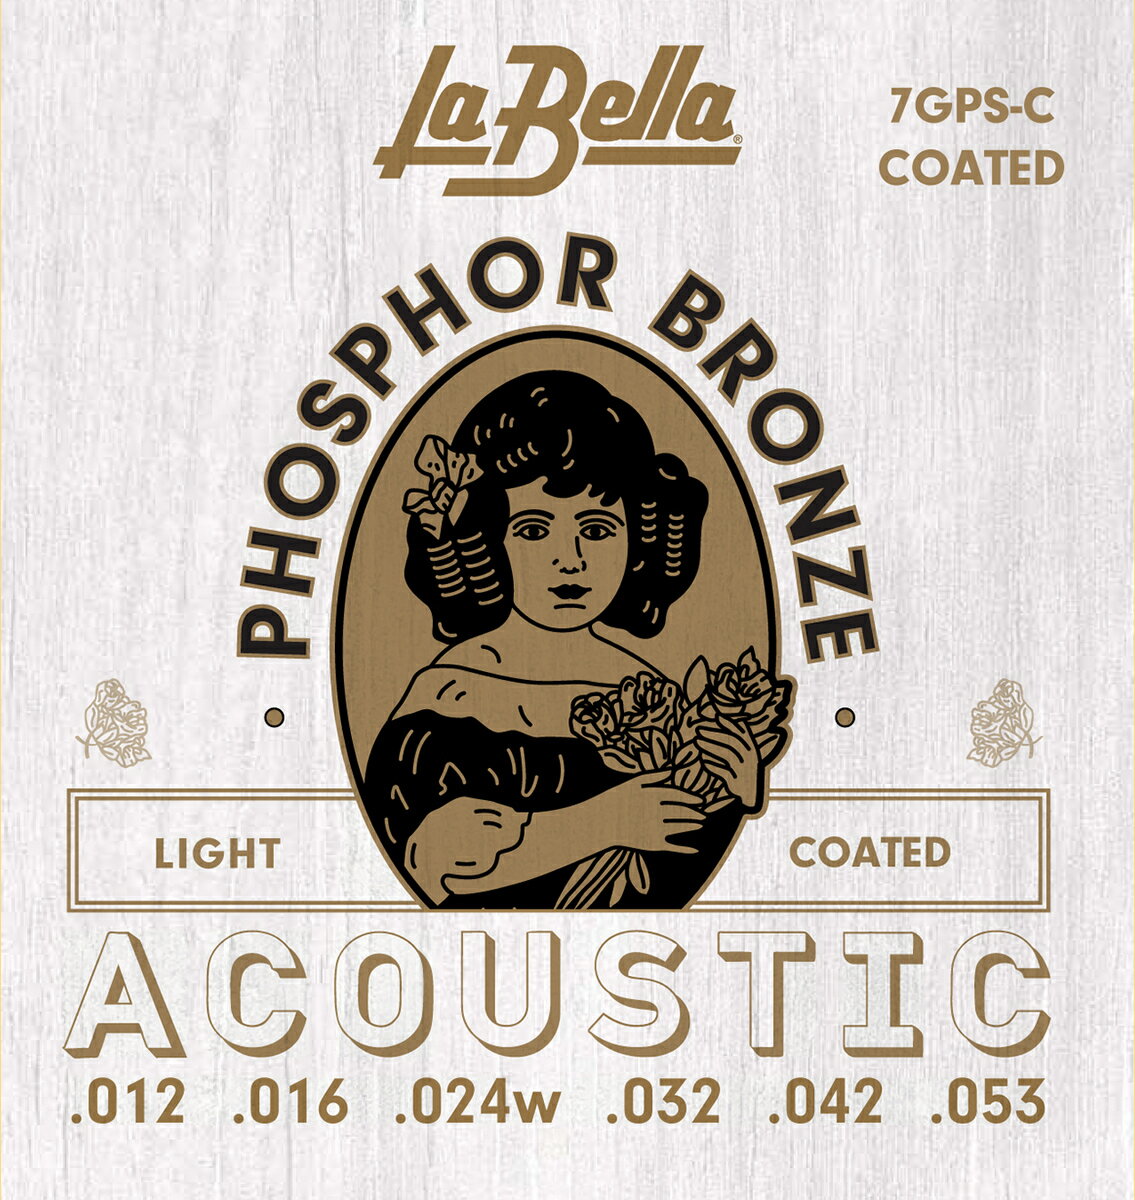 この商品は La Bella 7GPS-C Phospher Bronze Coated ライトゲージ 1セット ポイントラ・ベラ フォスファーブロンズ コーティング アコースティックギター弦 世界中の芸術家に愛され続けているLA BELLA イタリア発祥、ニューヨークに本社・工場を構え、最新設備とハンドメイド工程を高次元でバランスさせるLA BELLA（ラベラ）。アンドリューヨークをはじめ世界中のトップアーティストに愛され続けています。 ショップからのメッセージ イタリア発祥、ニューヨークに本社・工場を構え、現在もハンドメイドでの製造を続けているLA BELLA（ラベラ）。独自のコーティング技術によりロングライフを実現。LIGHT　Plain Steel：.012 .016　Phosphor Bronze Wound：.024 .032 .042 .053CUSTOM LIGHT：.011　.015　.022w　.032　.042　.052EXTRA LIGHT：.010　.014　.023w　.030　.039　.047 納期について 在庫がある場合、0〜2営業日以内に発送します。4